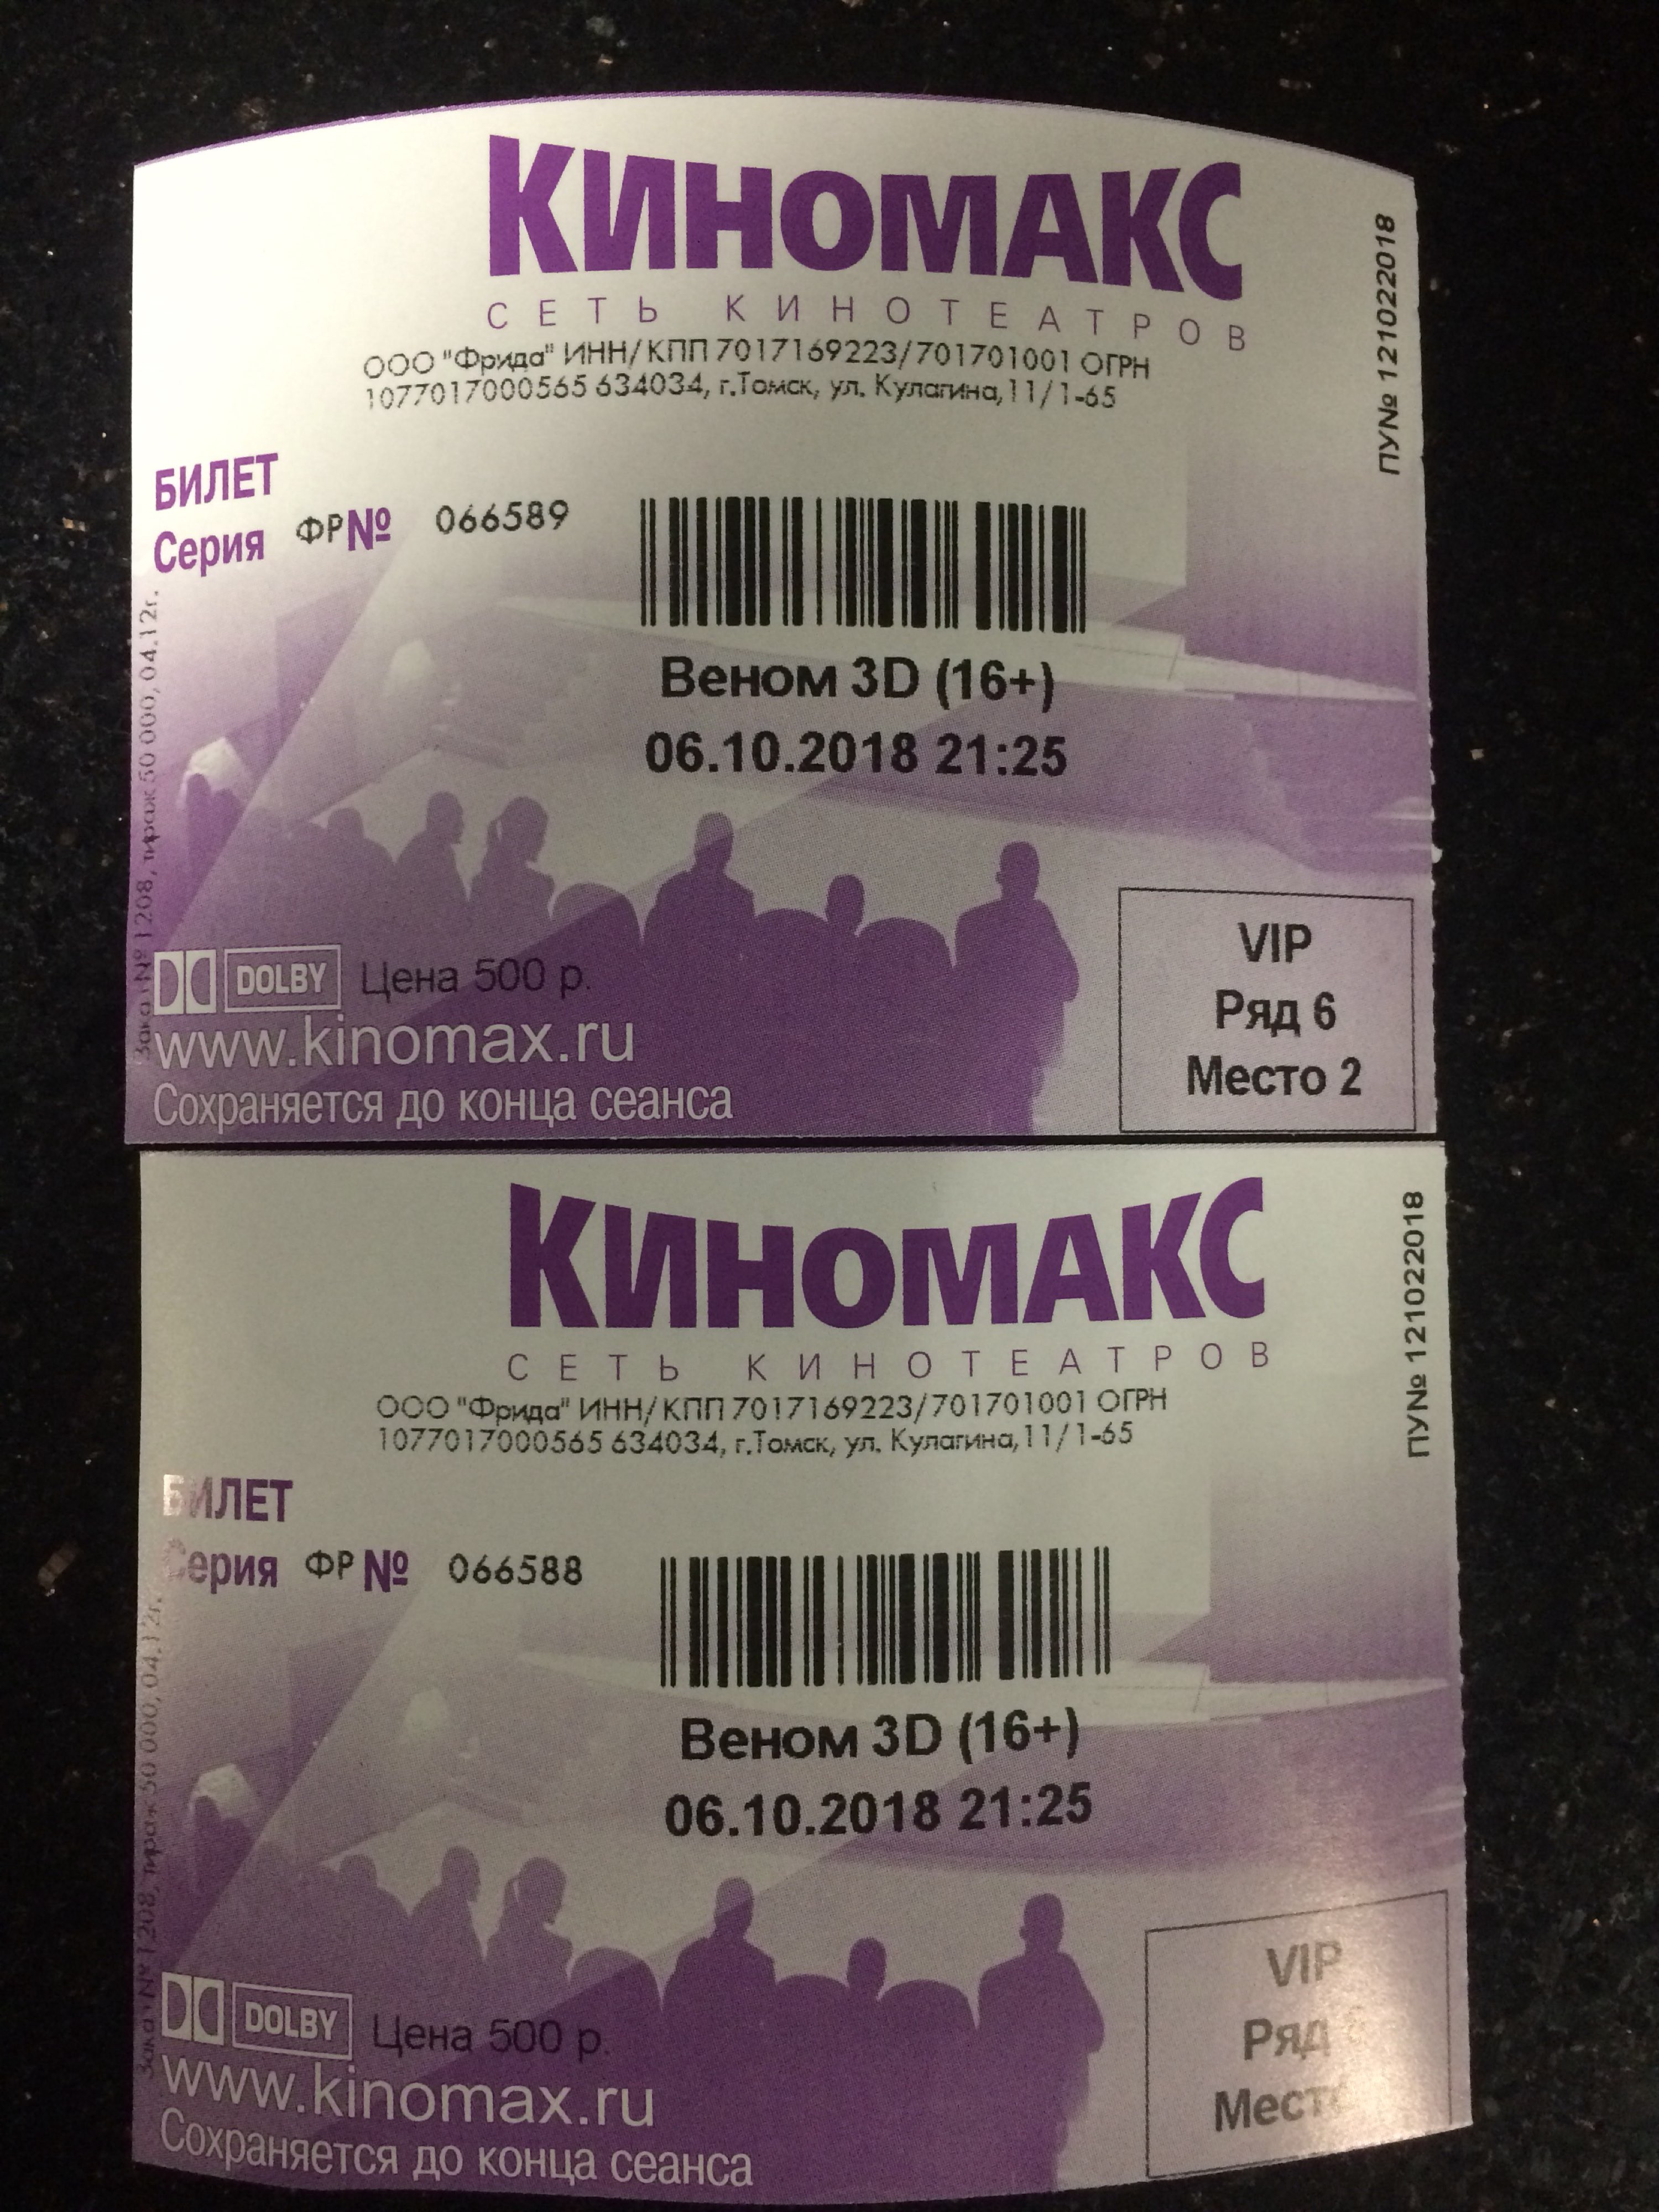 Киномакс планета красноярск билеты